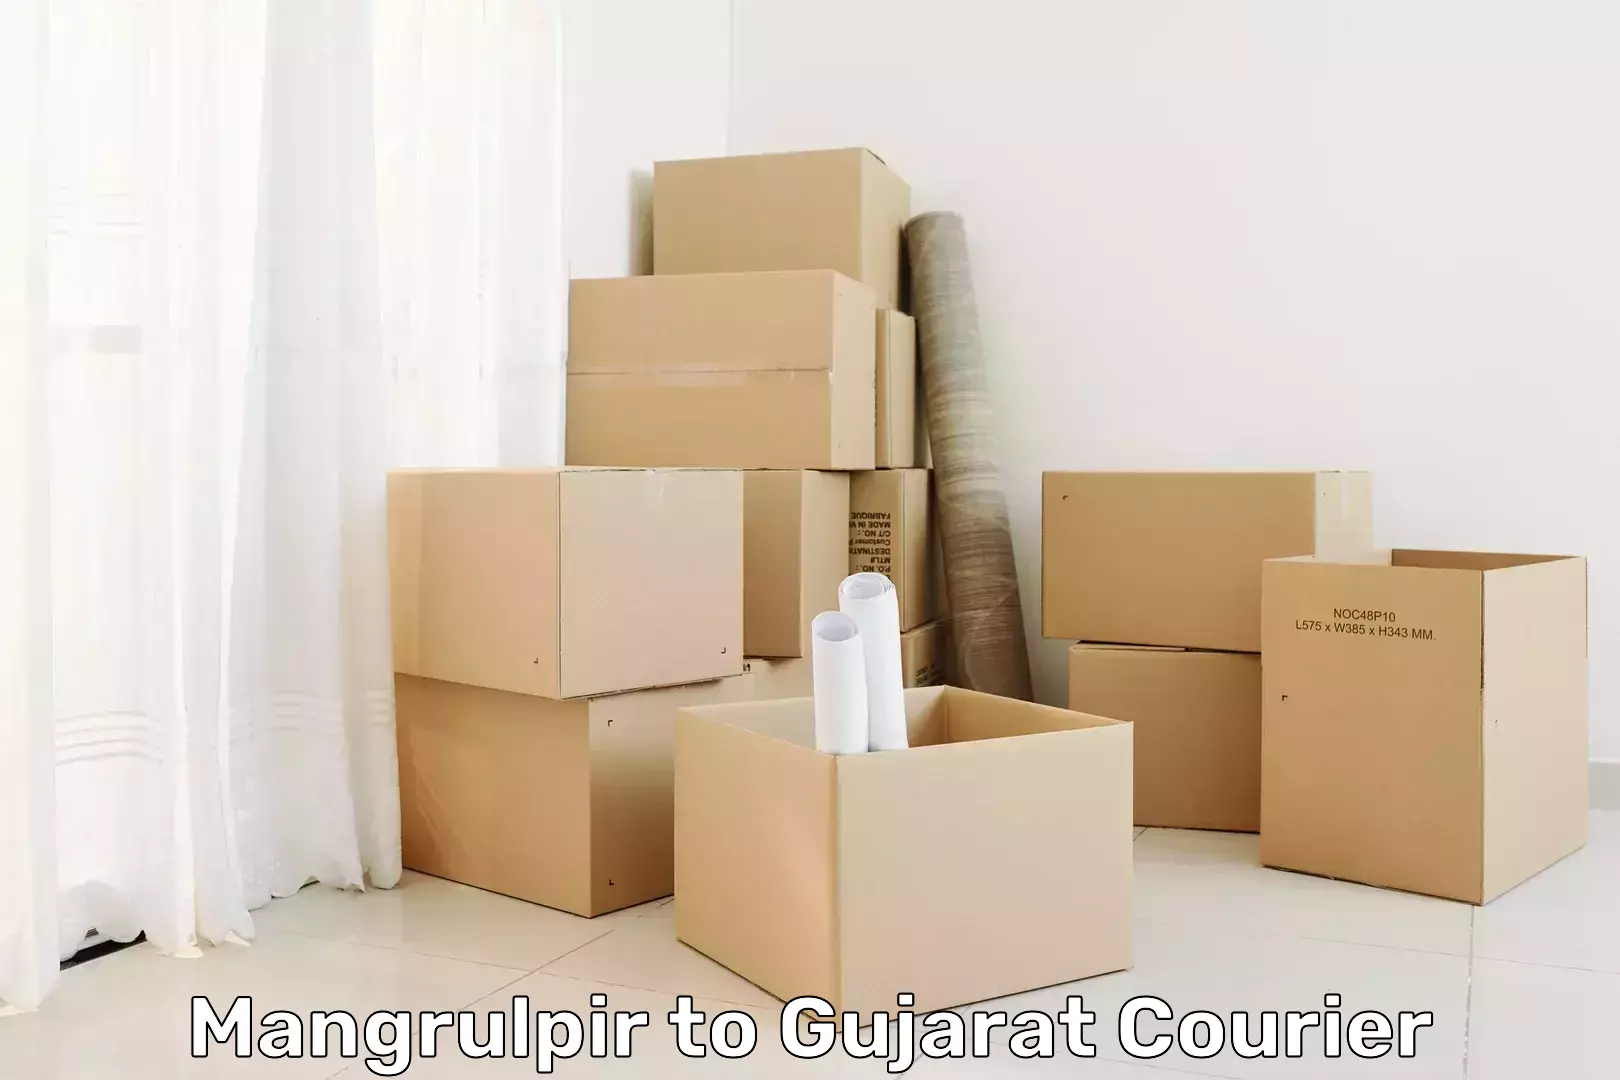 Reliable package handling Mangrulpir to Gujarat